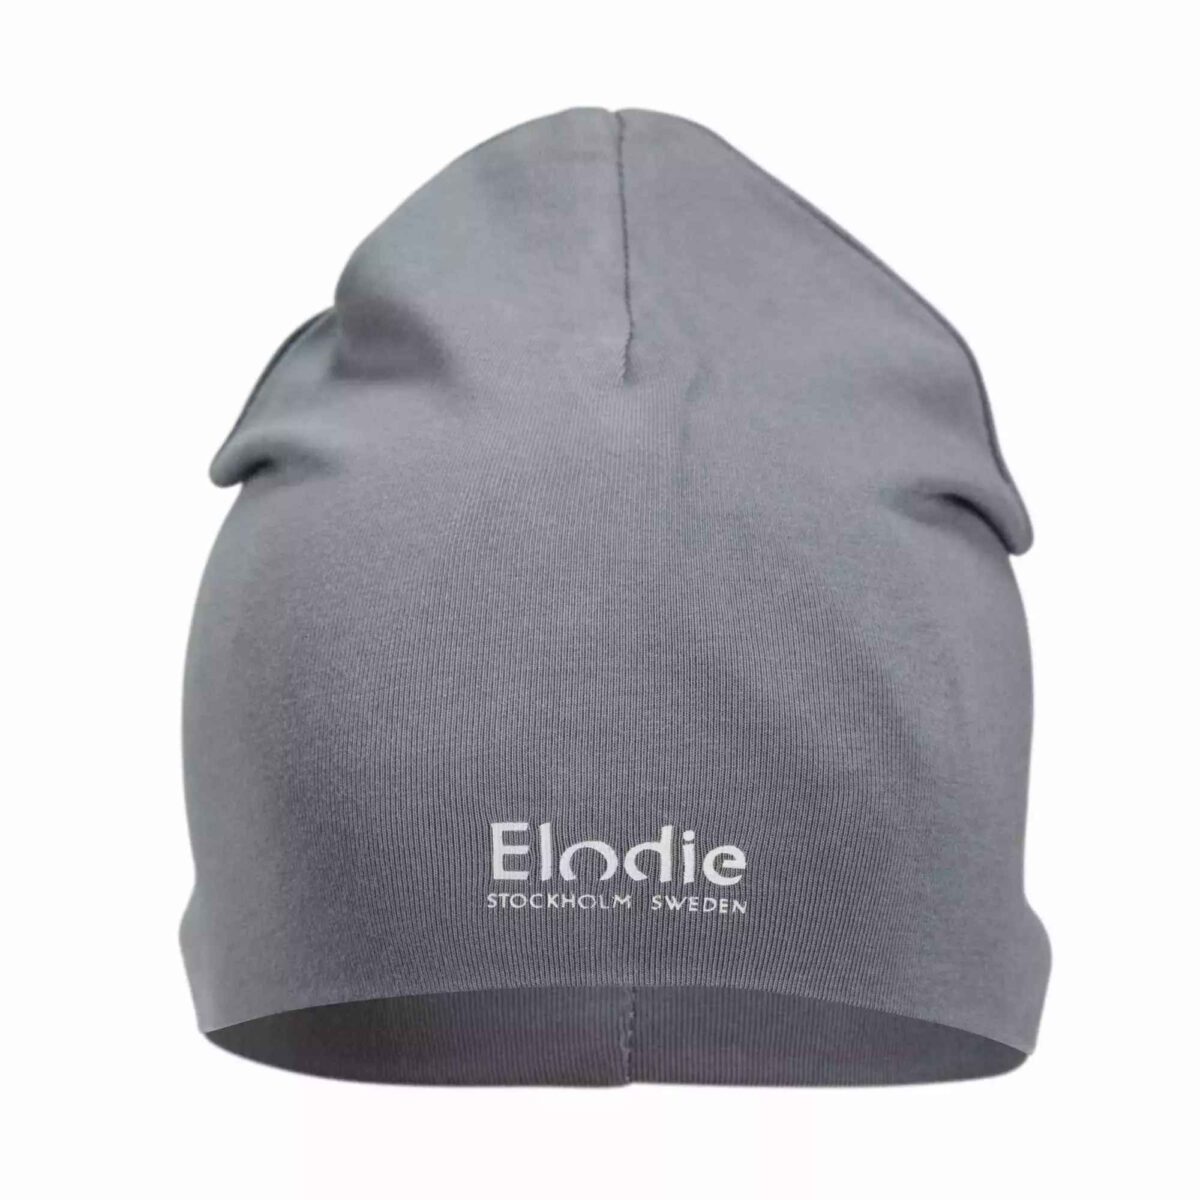 Elodie Details - Logo Beanie - Tender Blue 6-12 Months - Ubrania I Akcesoria &Gt; Ubrania &Gt; Ubrania Dla Dzieci I Niemowląt